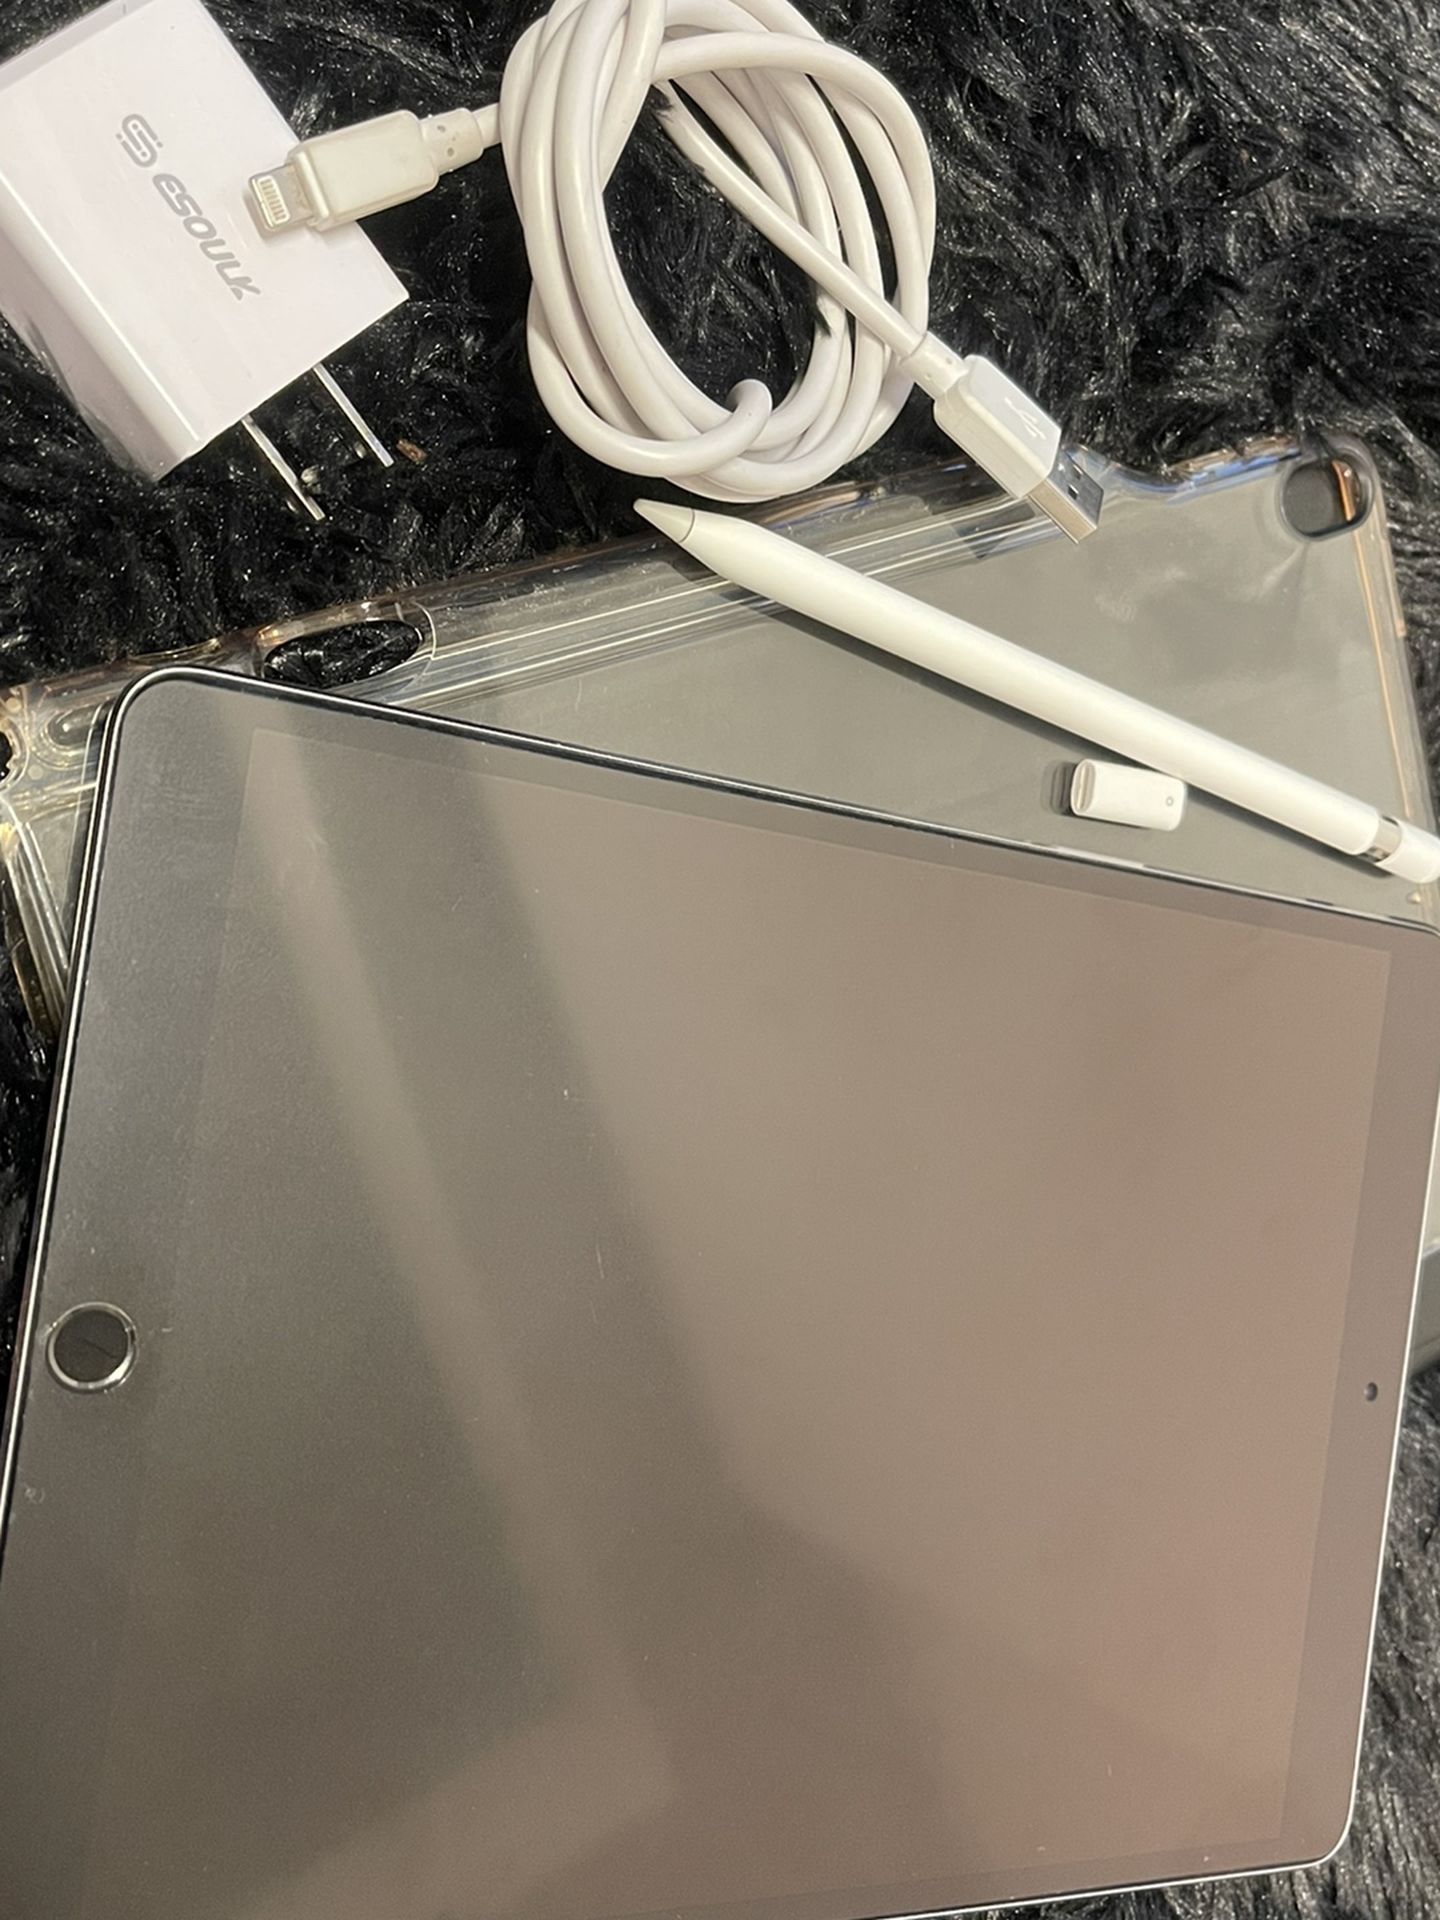 iPad Pro (10.5-inch)- Space Gray 64gb 2nd gen (2017) 10.5” WiFi + 1st generation Apple Pen